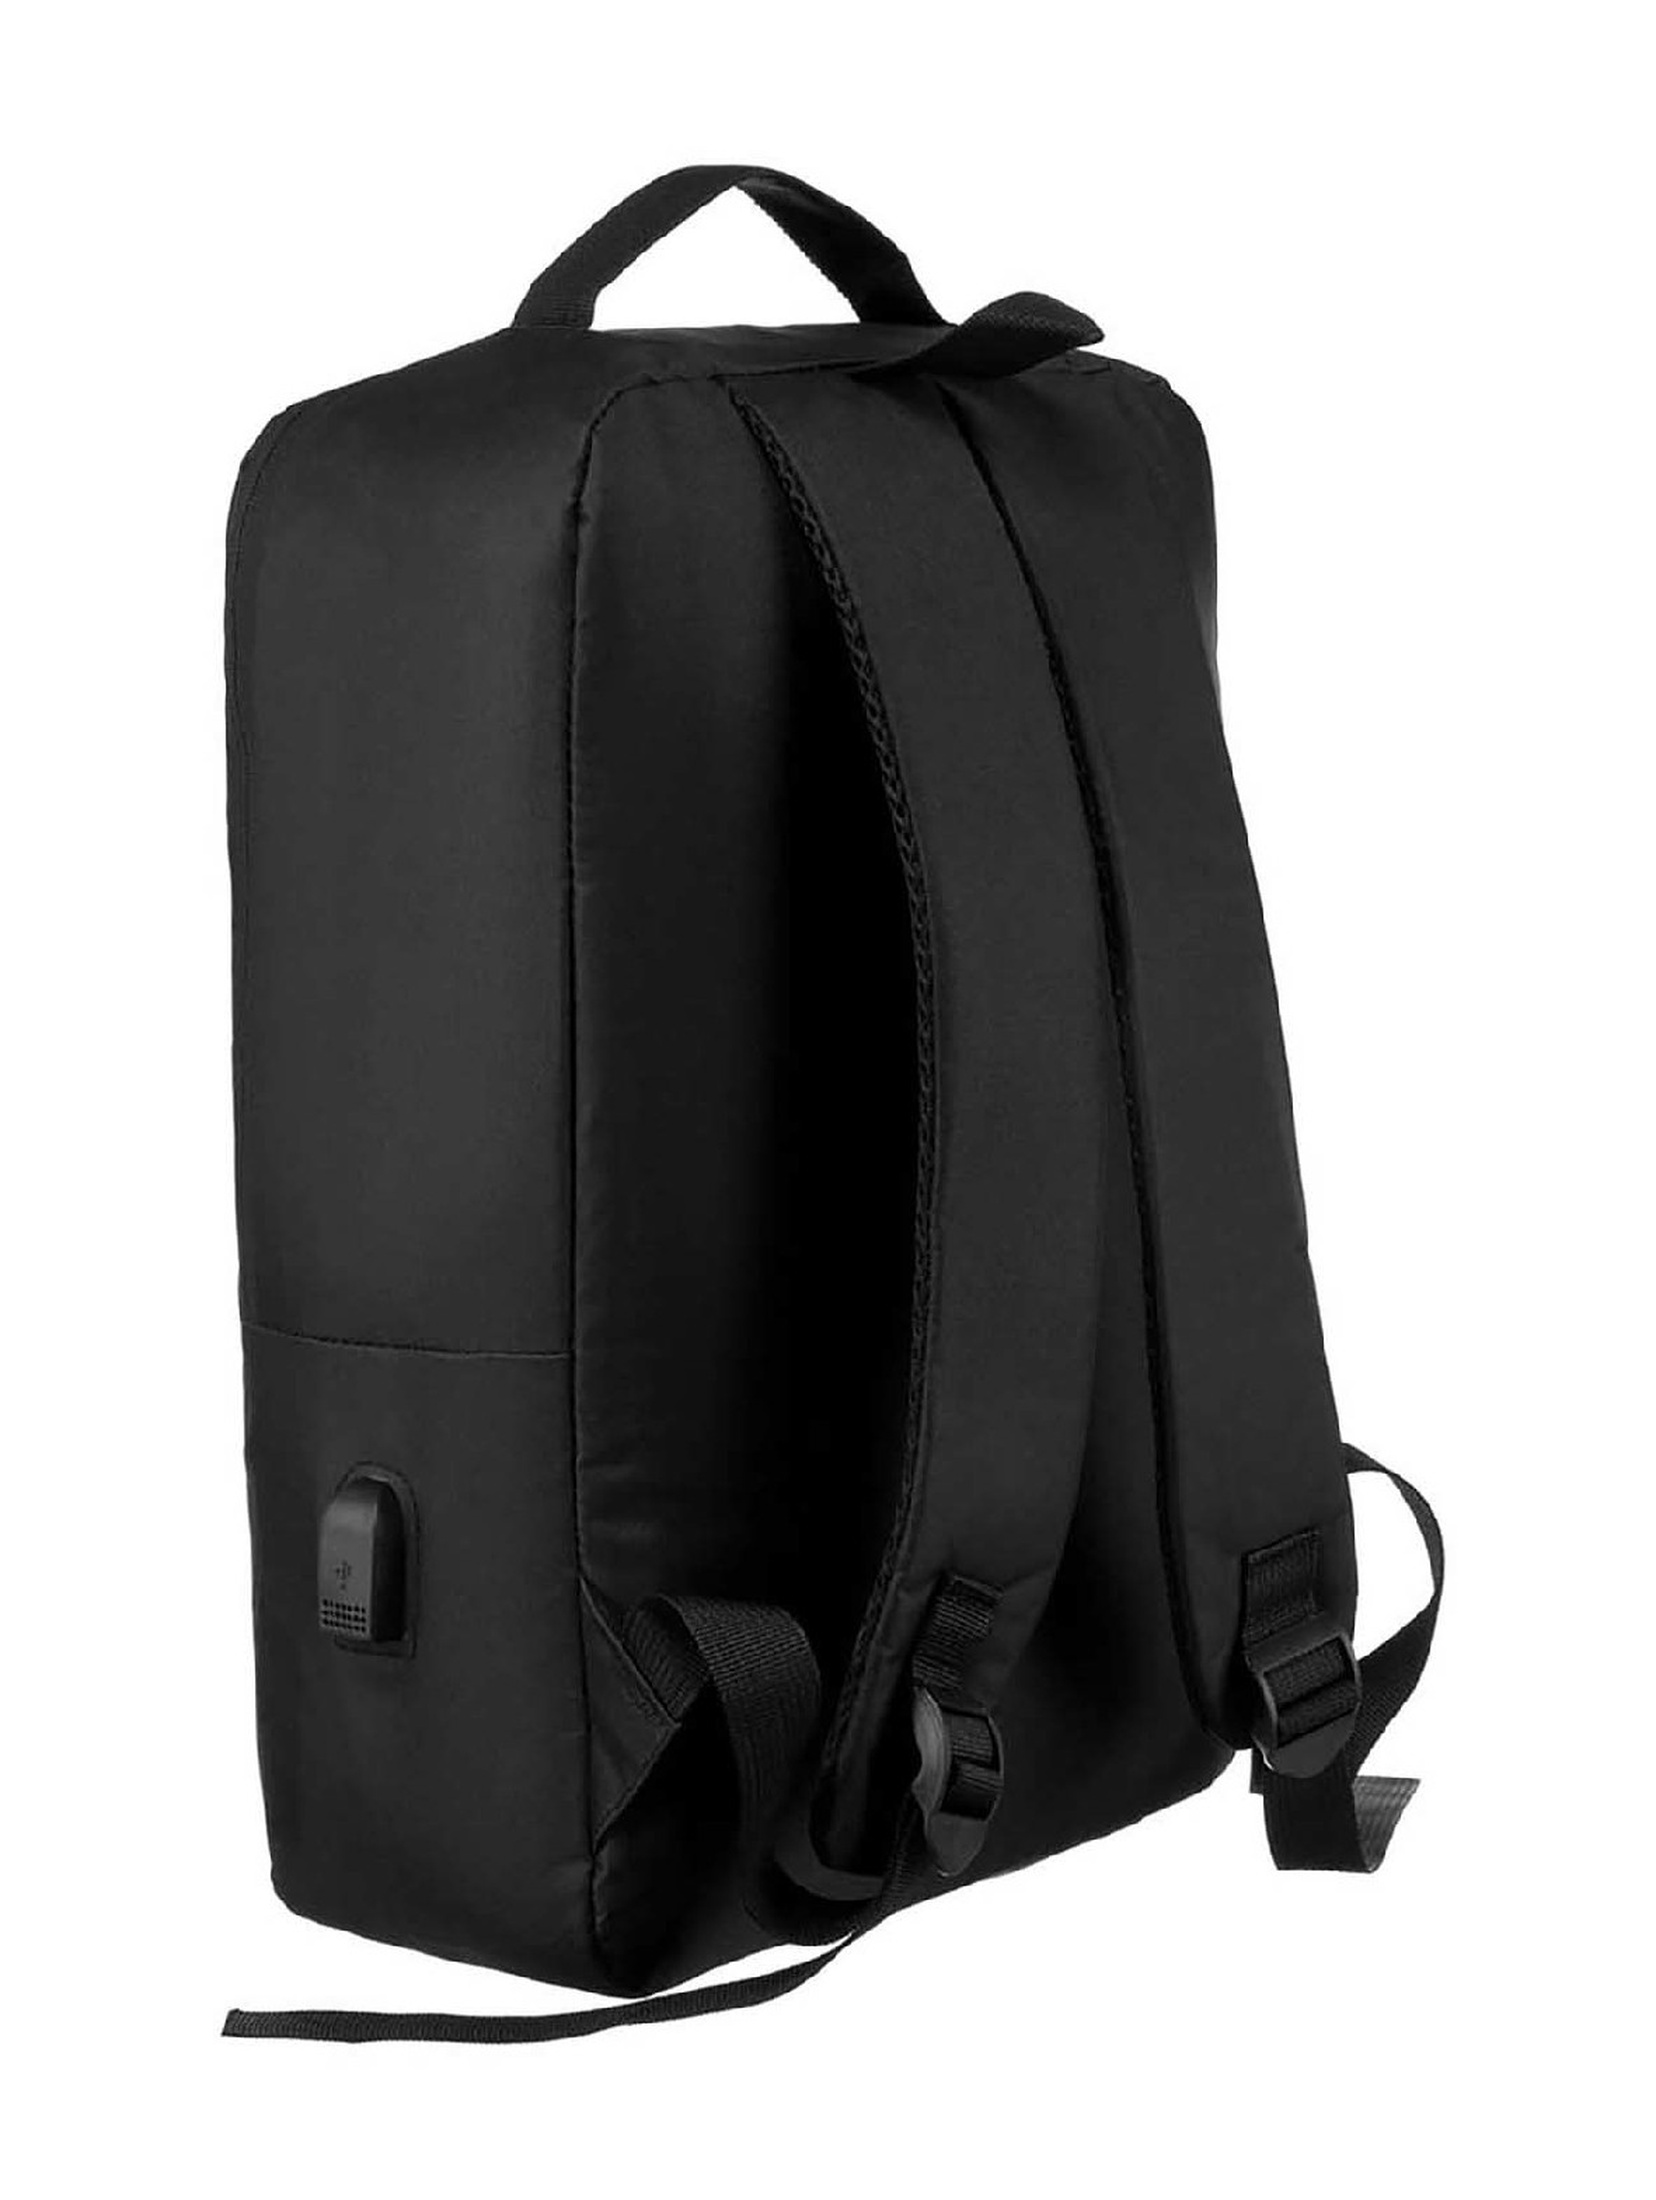 Plecak unisex podróżny z miejscem na laptopa - Peterson